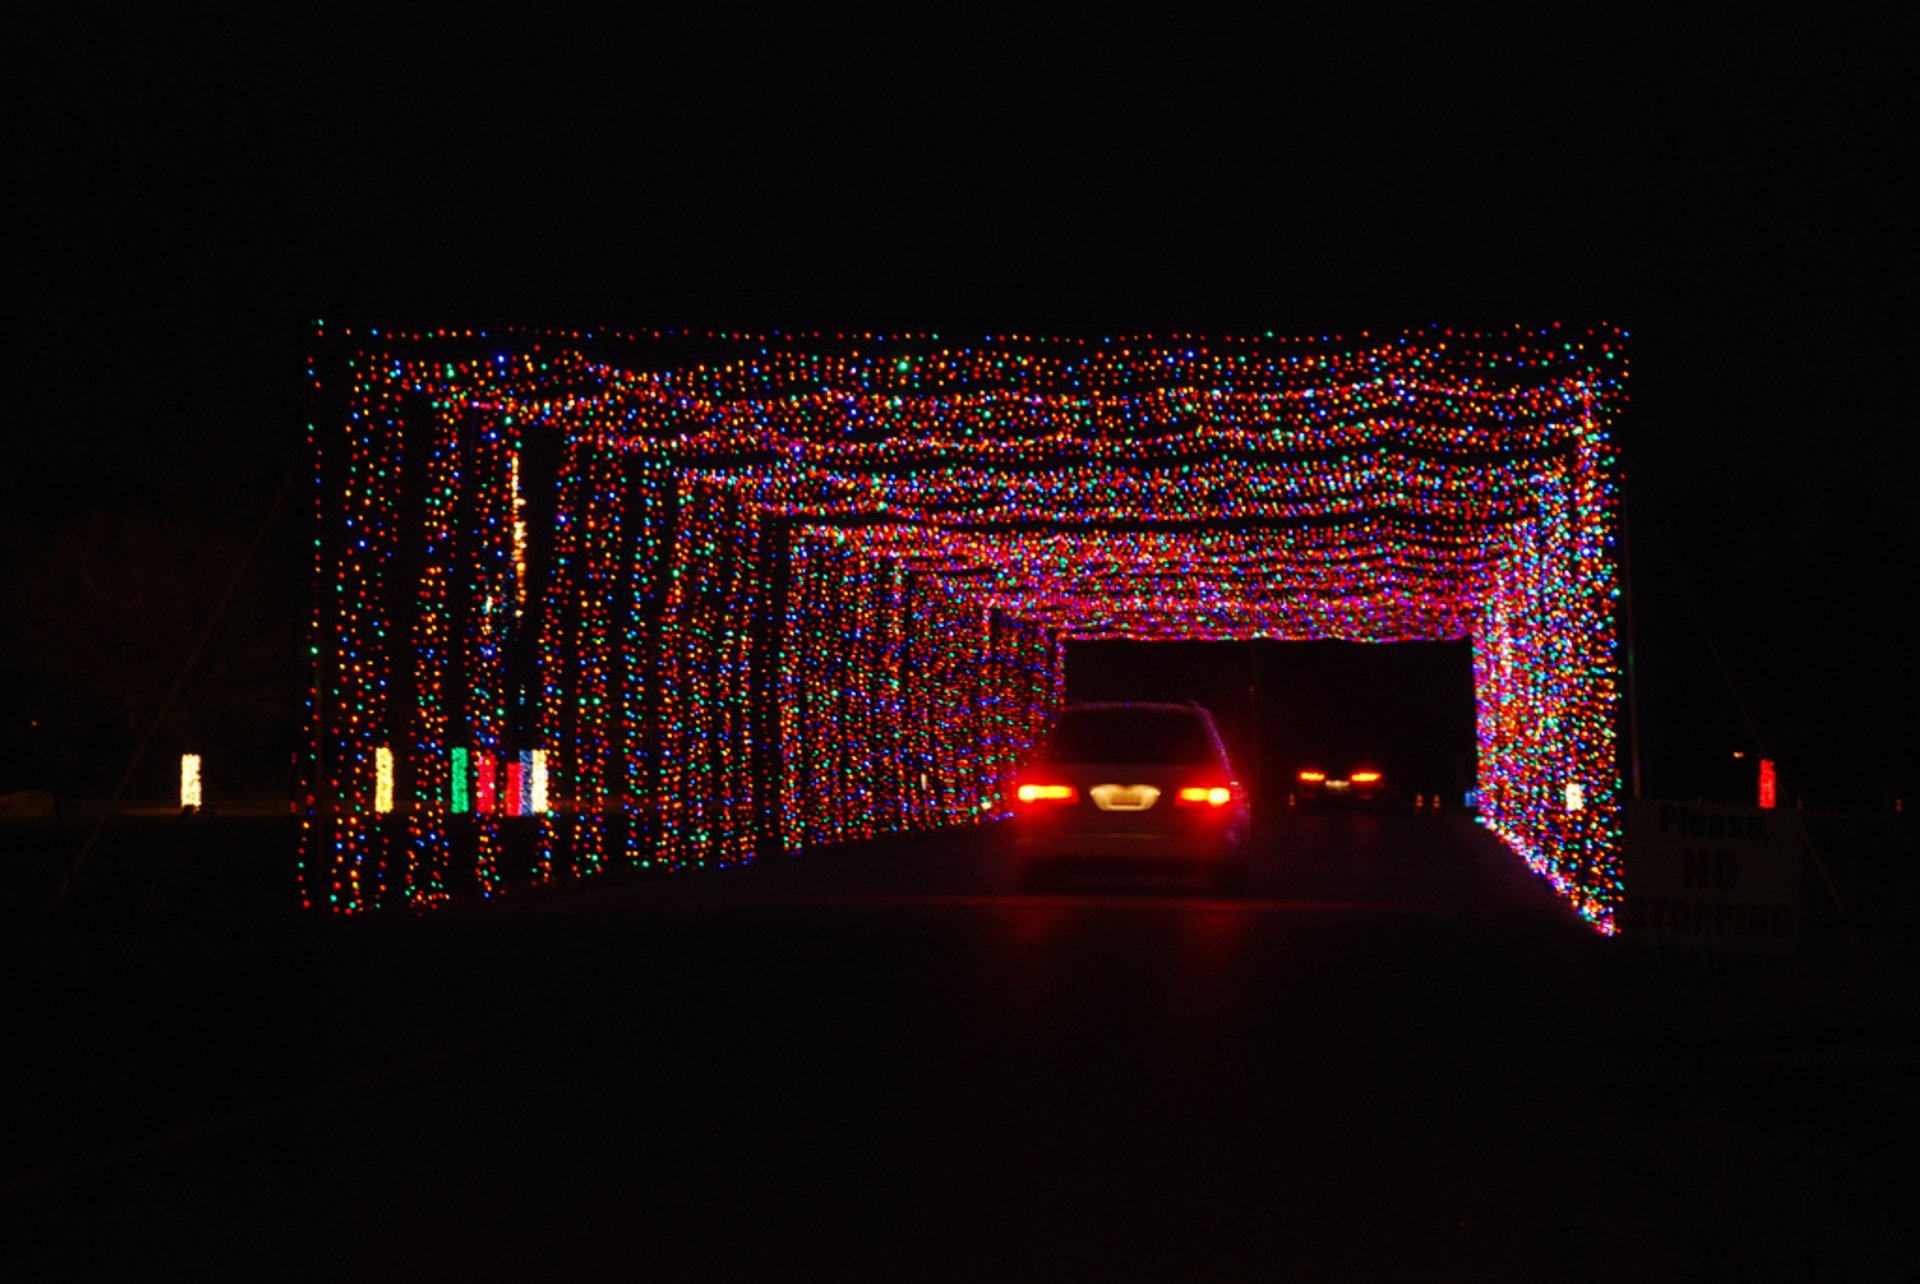 Guida attraverso parchi di luce di Natale